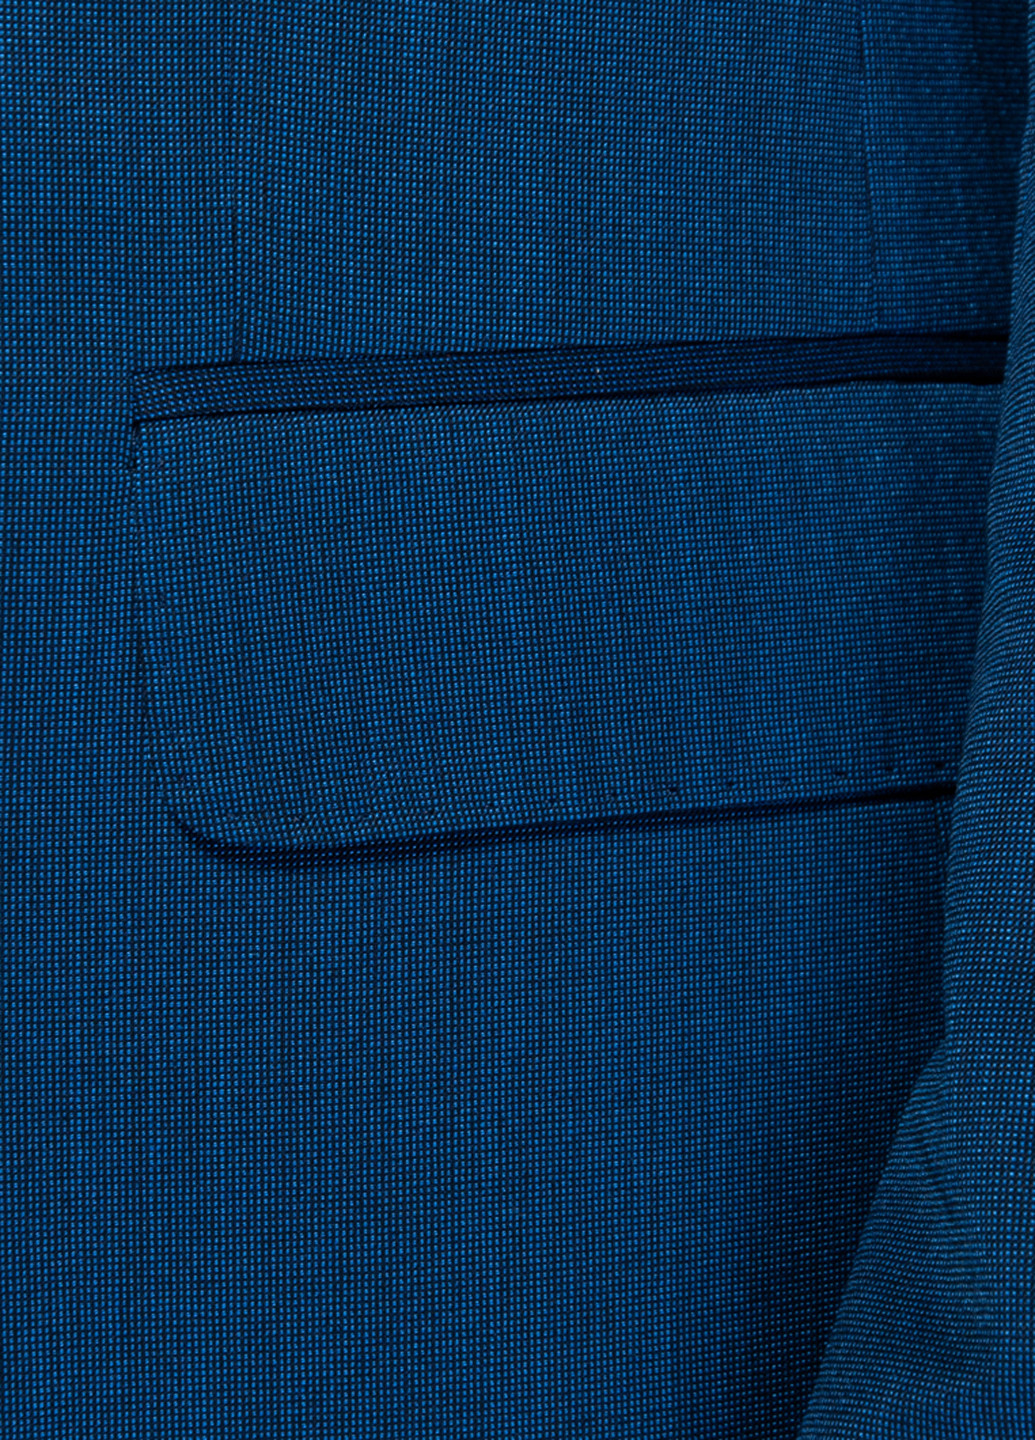 Синій демісезонний костюм (піджак, брюки) Arber